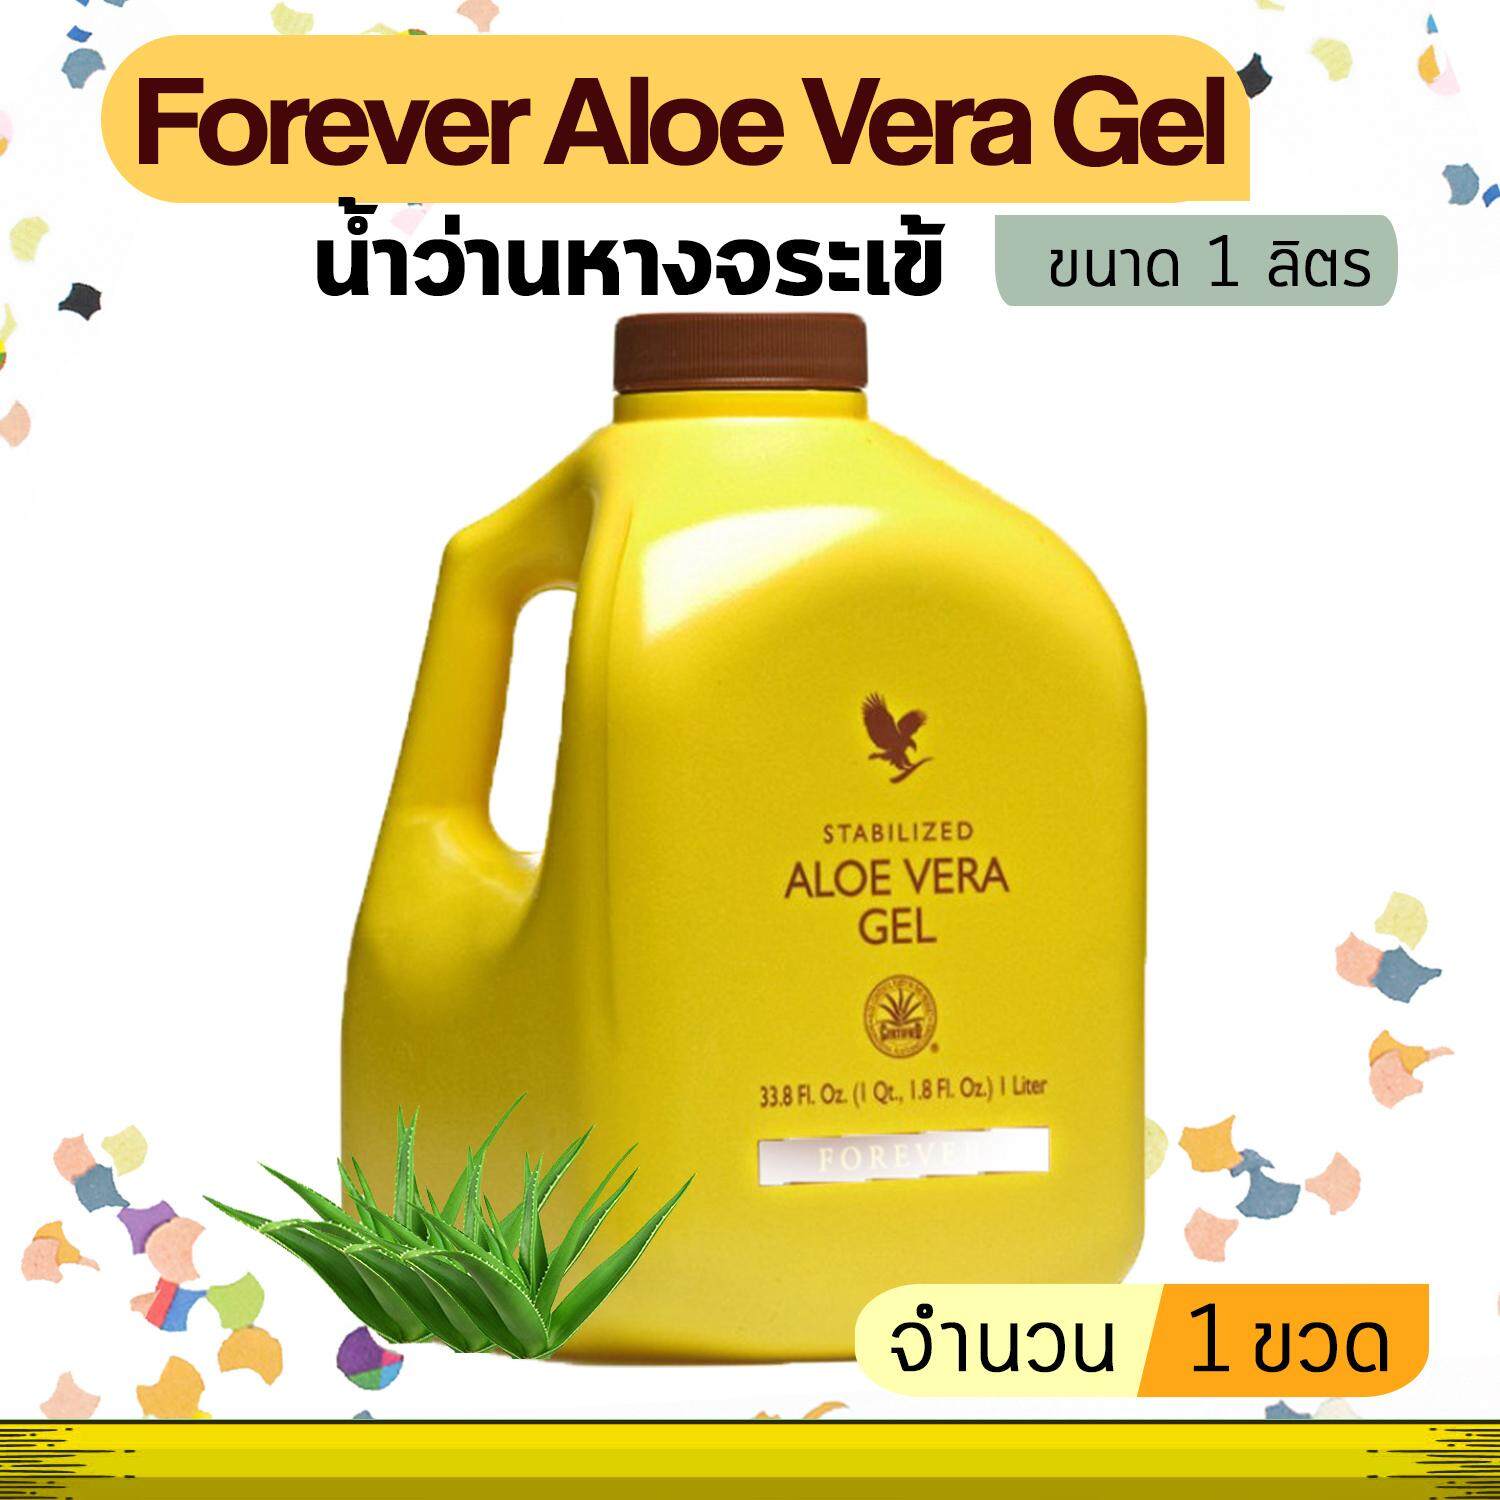 Forever Aloe Vera Gel ฟอเอเวอร์อโลเวร่า น้ำว่านหางจระเข้ (ขนาด 1 ขวด จำนวน 1 ลิตร) สินค้านำเข้า